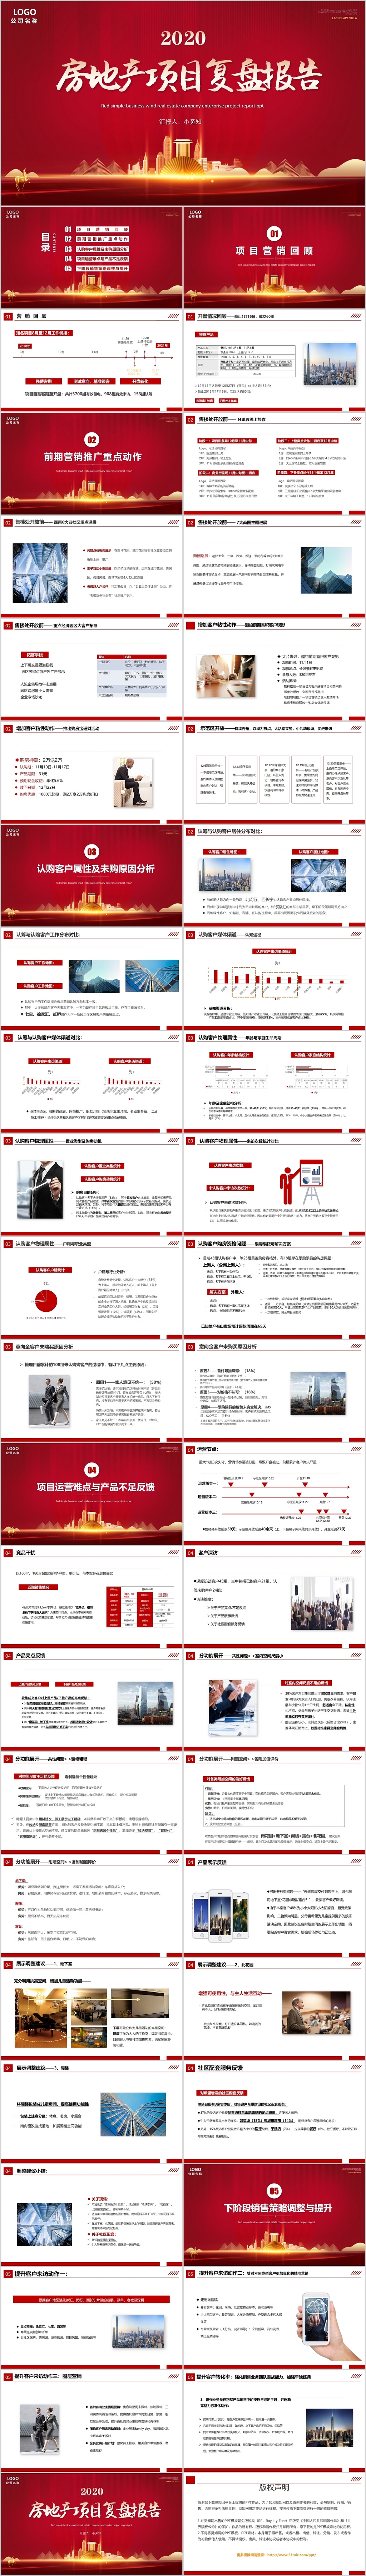 红色简约商务房地产项目复盘报告PPT模板